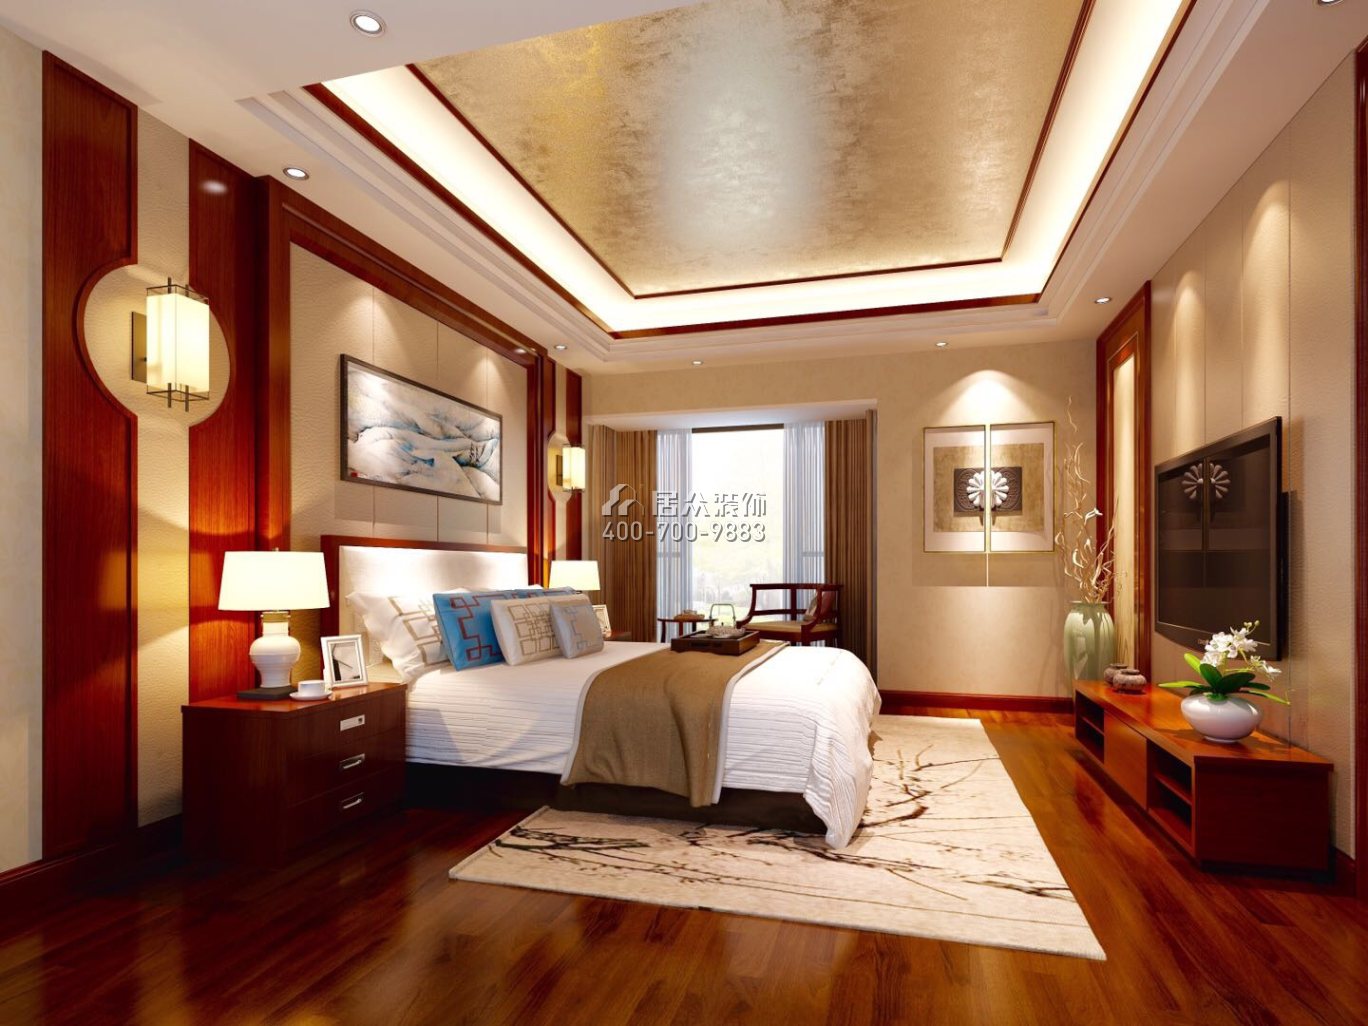 陶金山二期300平方米中式風格復式戶型臥室裝修效果圖